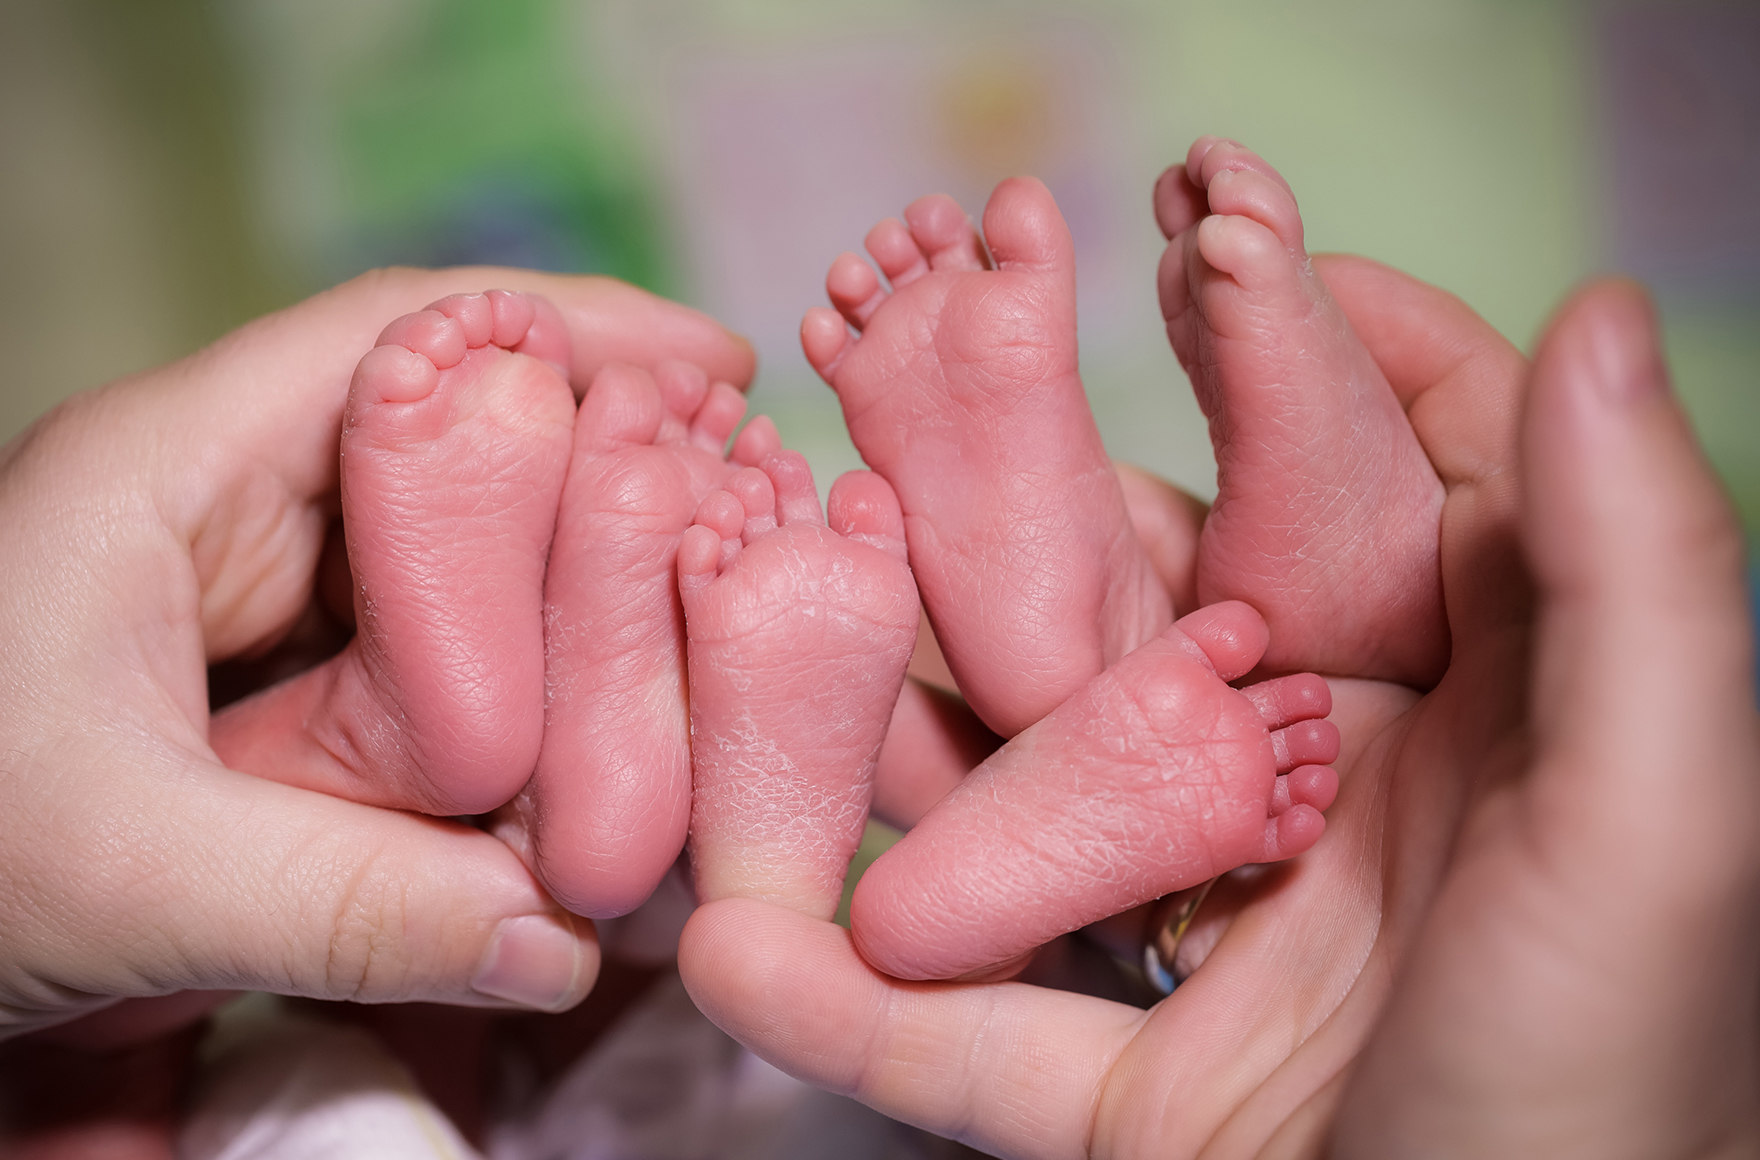 zwei Frauenhände halten sechs nackte Füße von drei Neugeborenen